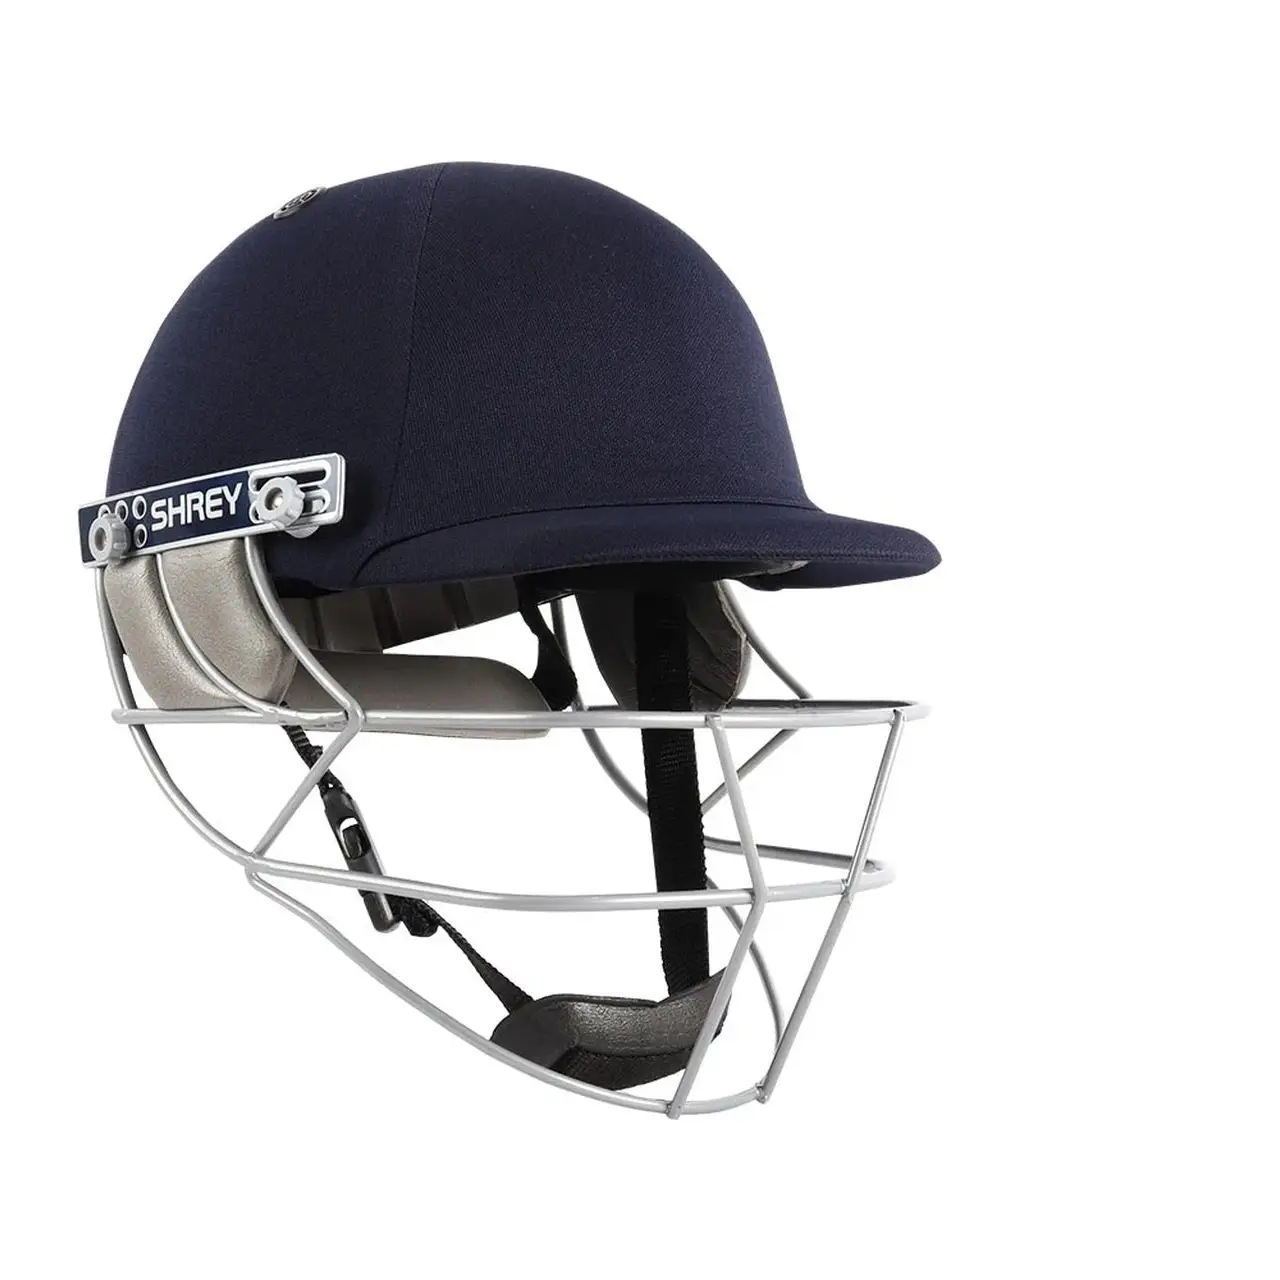 Shrey Match 2.0 Cricket Helmet Navy EVA Foam Padding - HELMETS & HEADGEAR